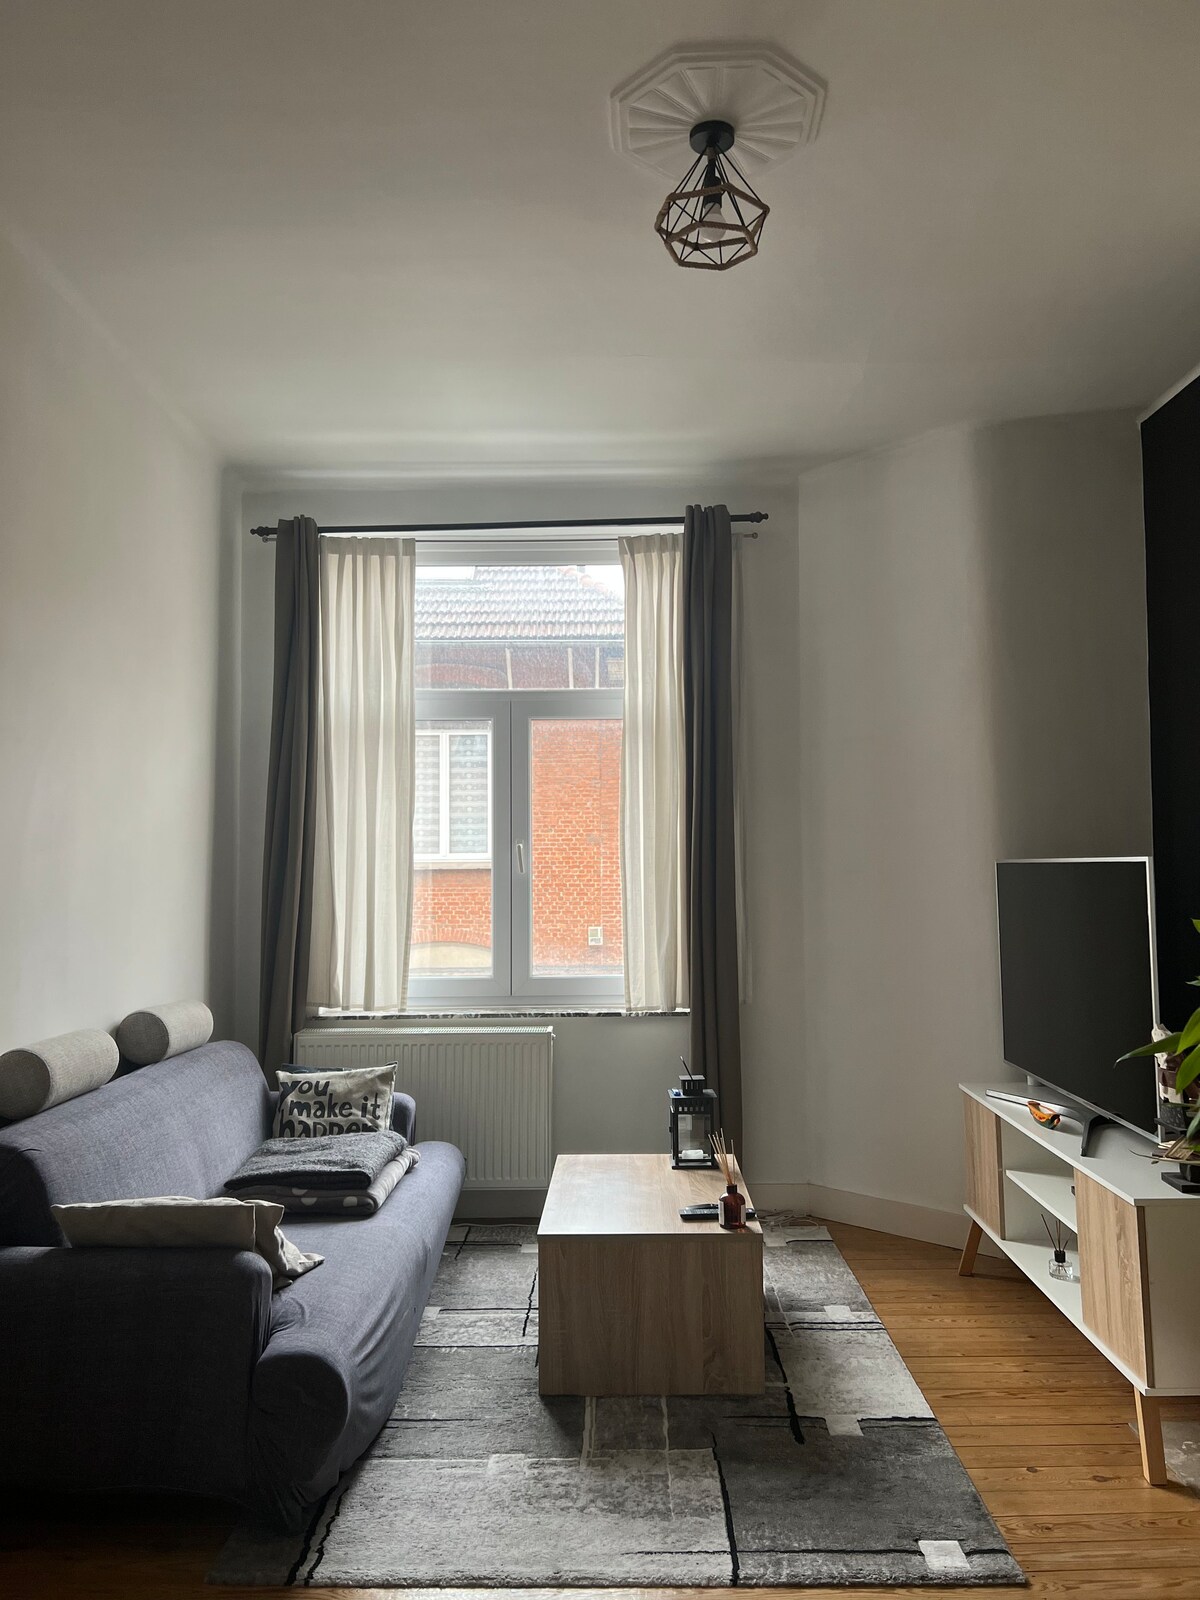 布鲁塞尔市区宽敞明亮的公寓公寓